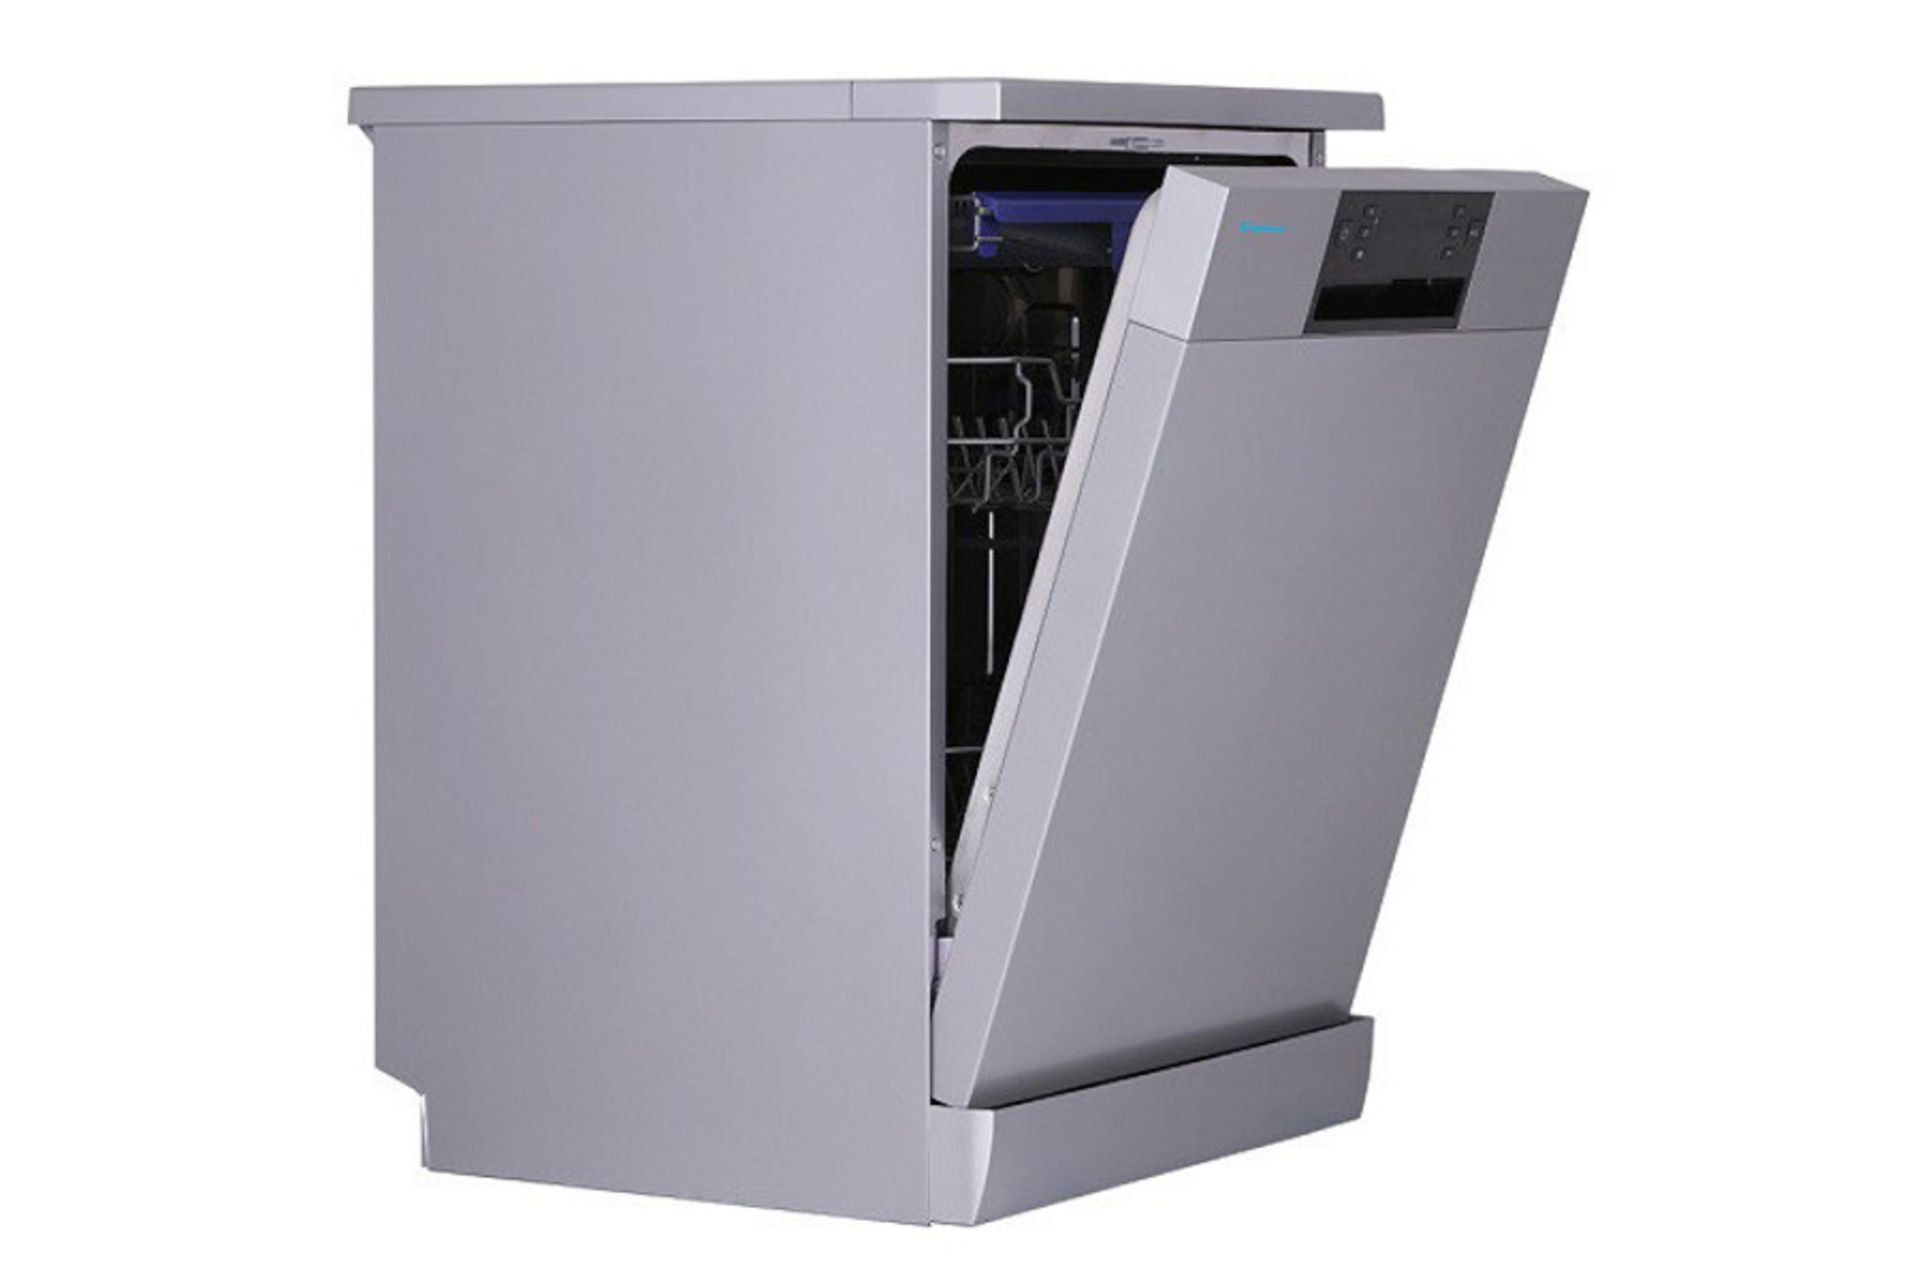 قیمت ماشین ظرفشویی کندی CDM 1523 در بخش محصولات زومیت